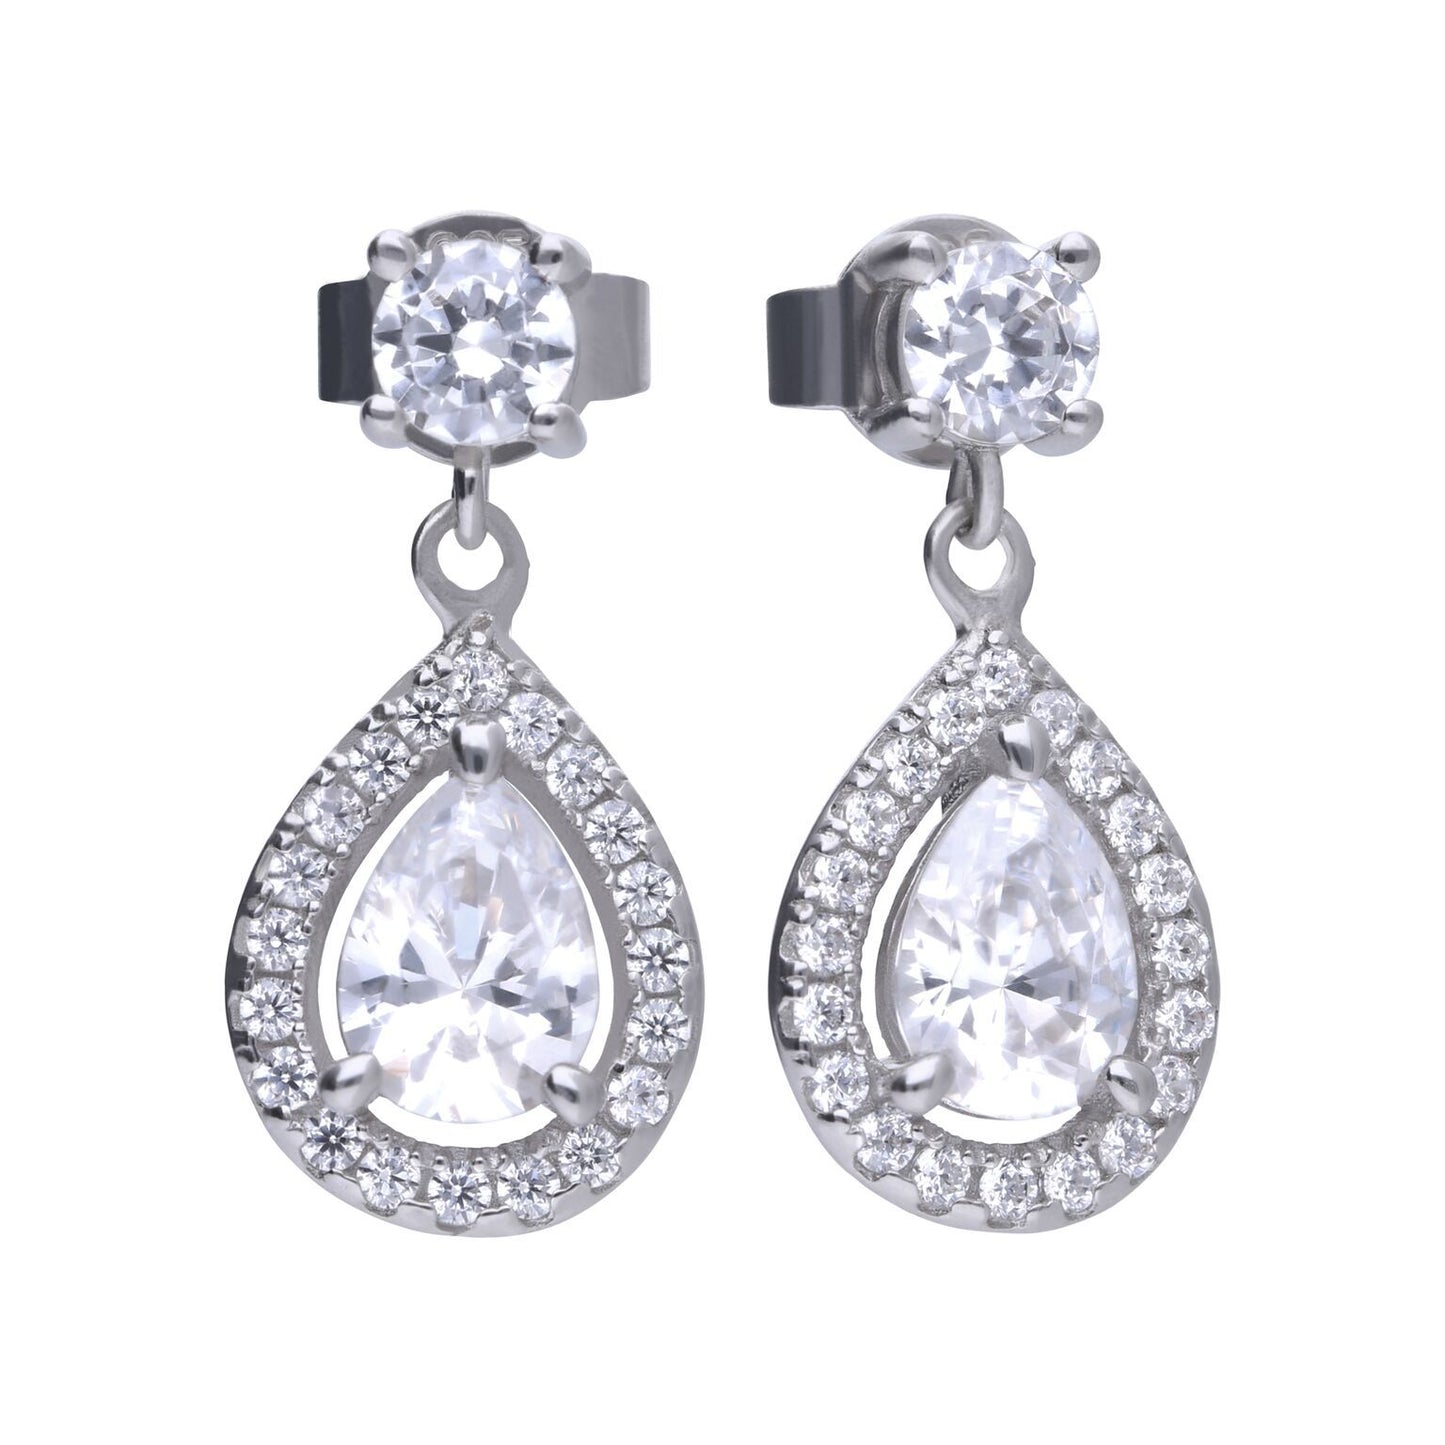 Diamonfire silver and cubic zirconia teardrop drop earrings